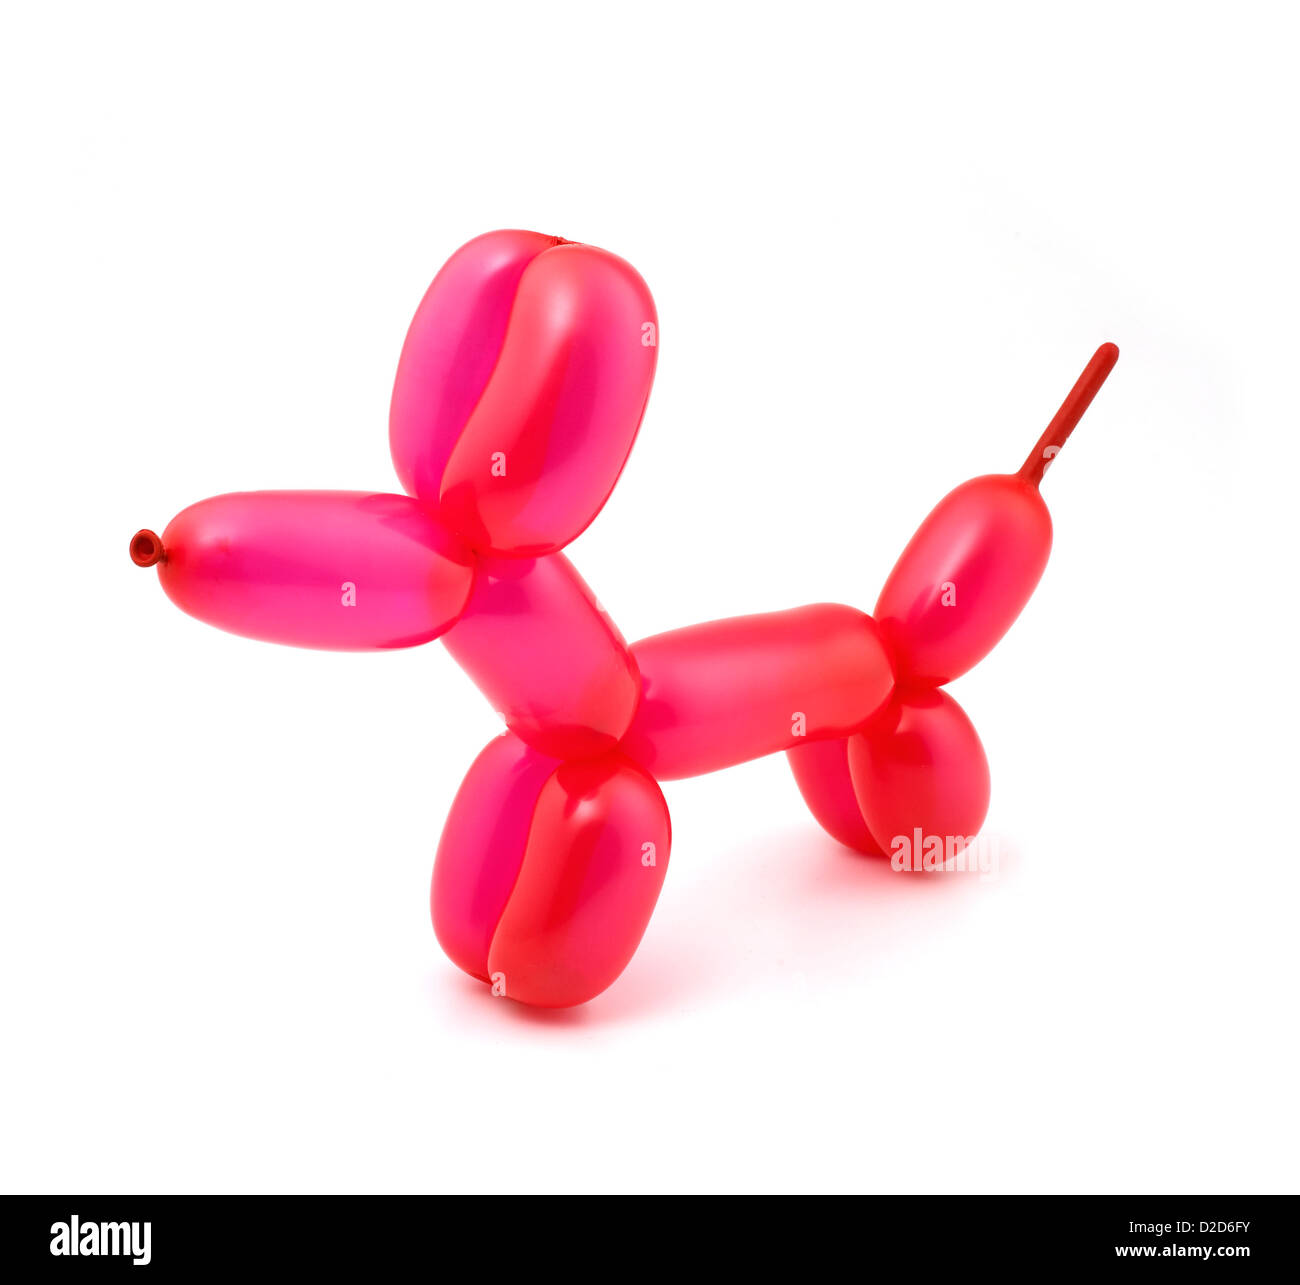 Ballon rouge en forme de chien découper fond blanc Banque D'Images